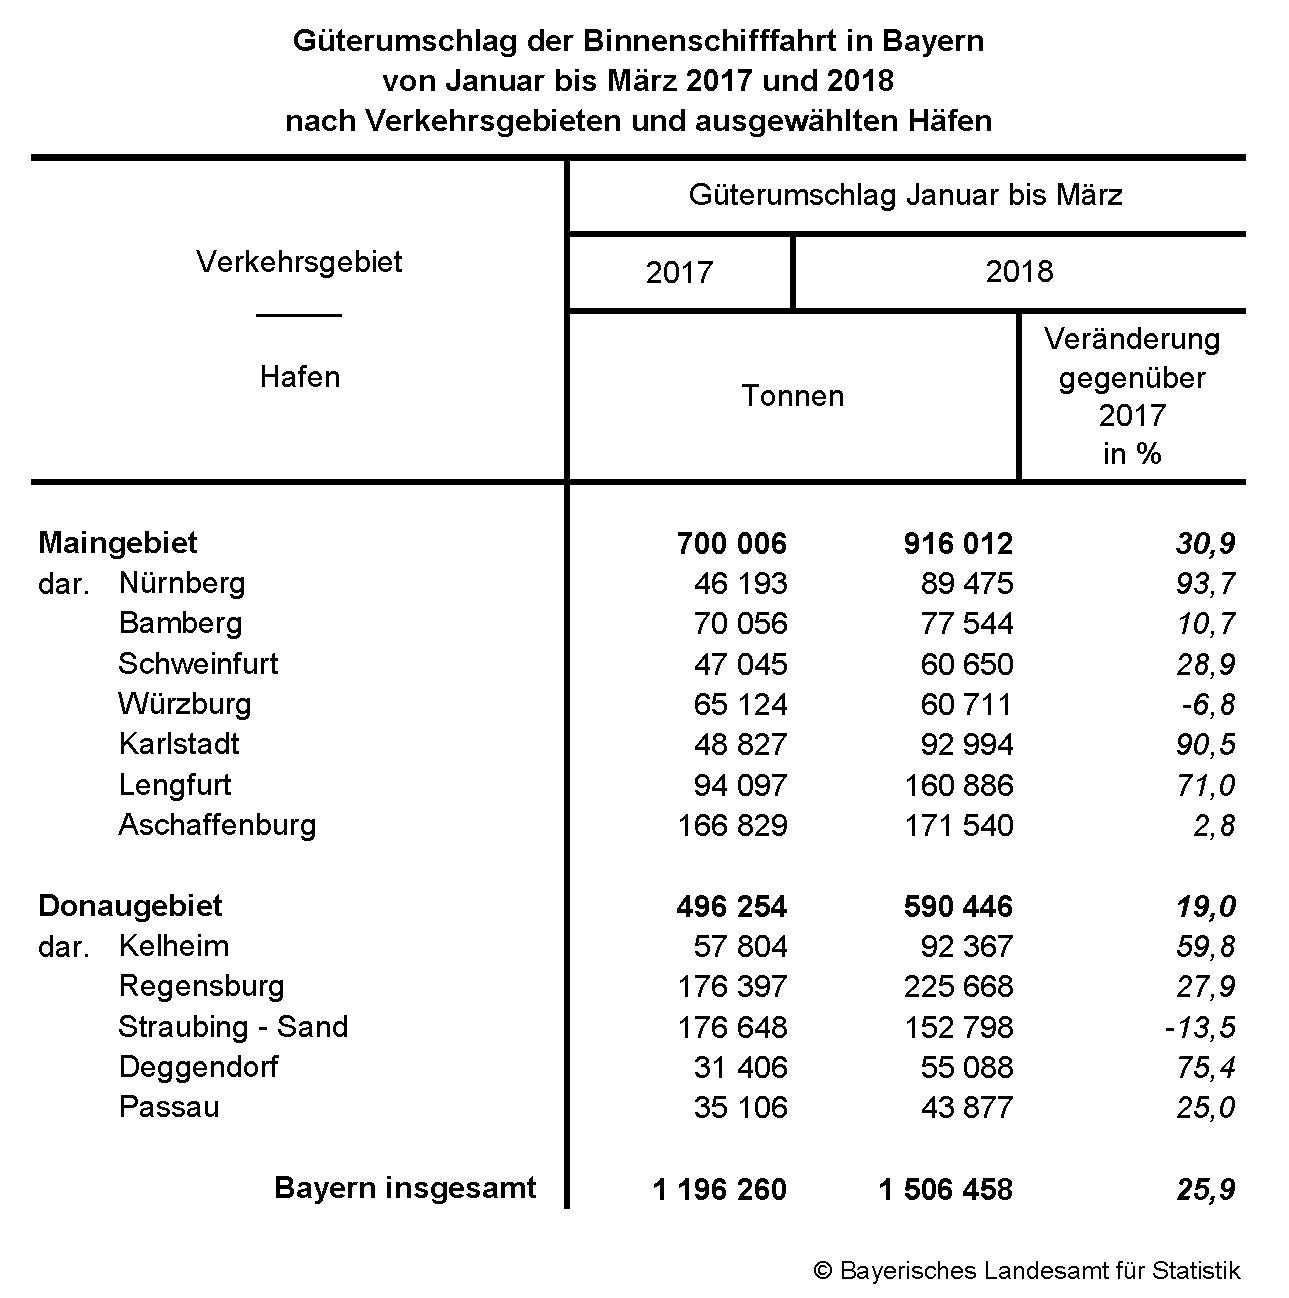 Güterumschlag der Binnenschiffahrt in Bayern von Januar bis März 2018 nach Verkehrsgebieten und ausgewählten Häfen